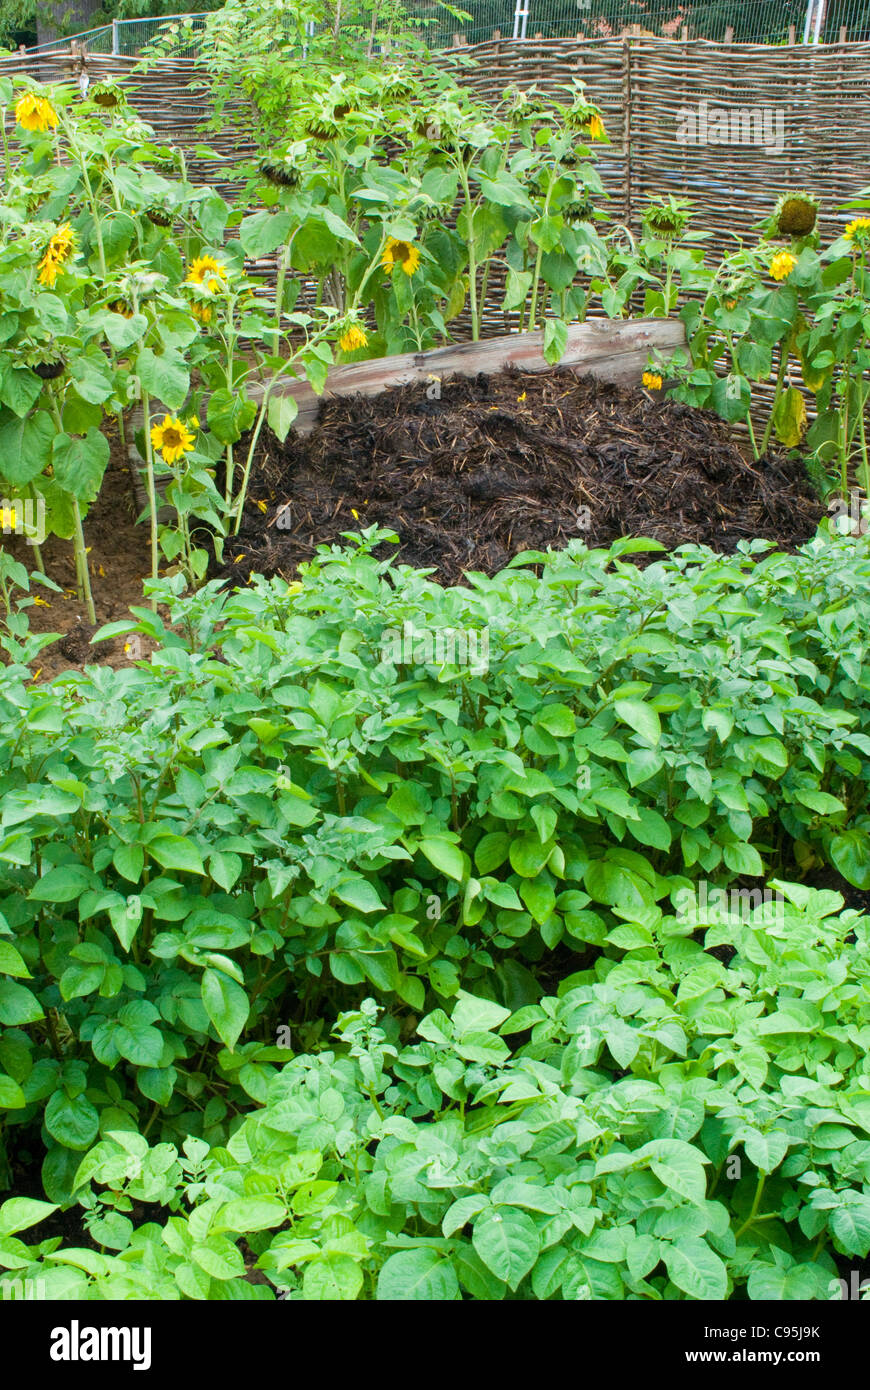 Un processo di compostaggio mucchio di letame + piante di patate verdure e girasoli per reintegrare nutrienti del suolo Giardinaggio organico graziosi fiori Foto Stock